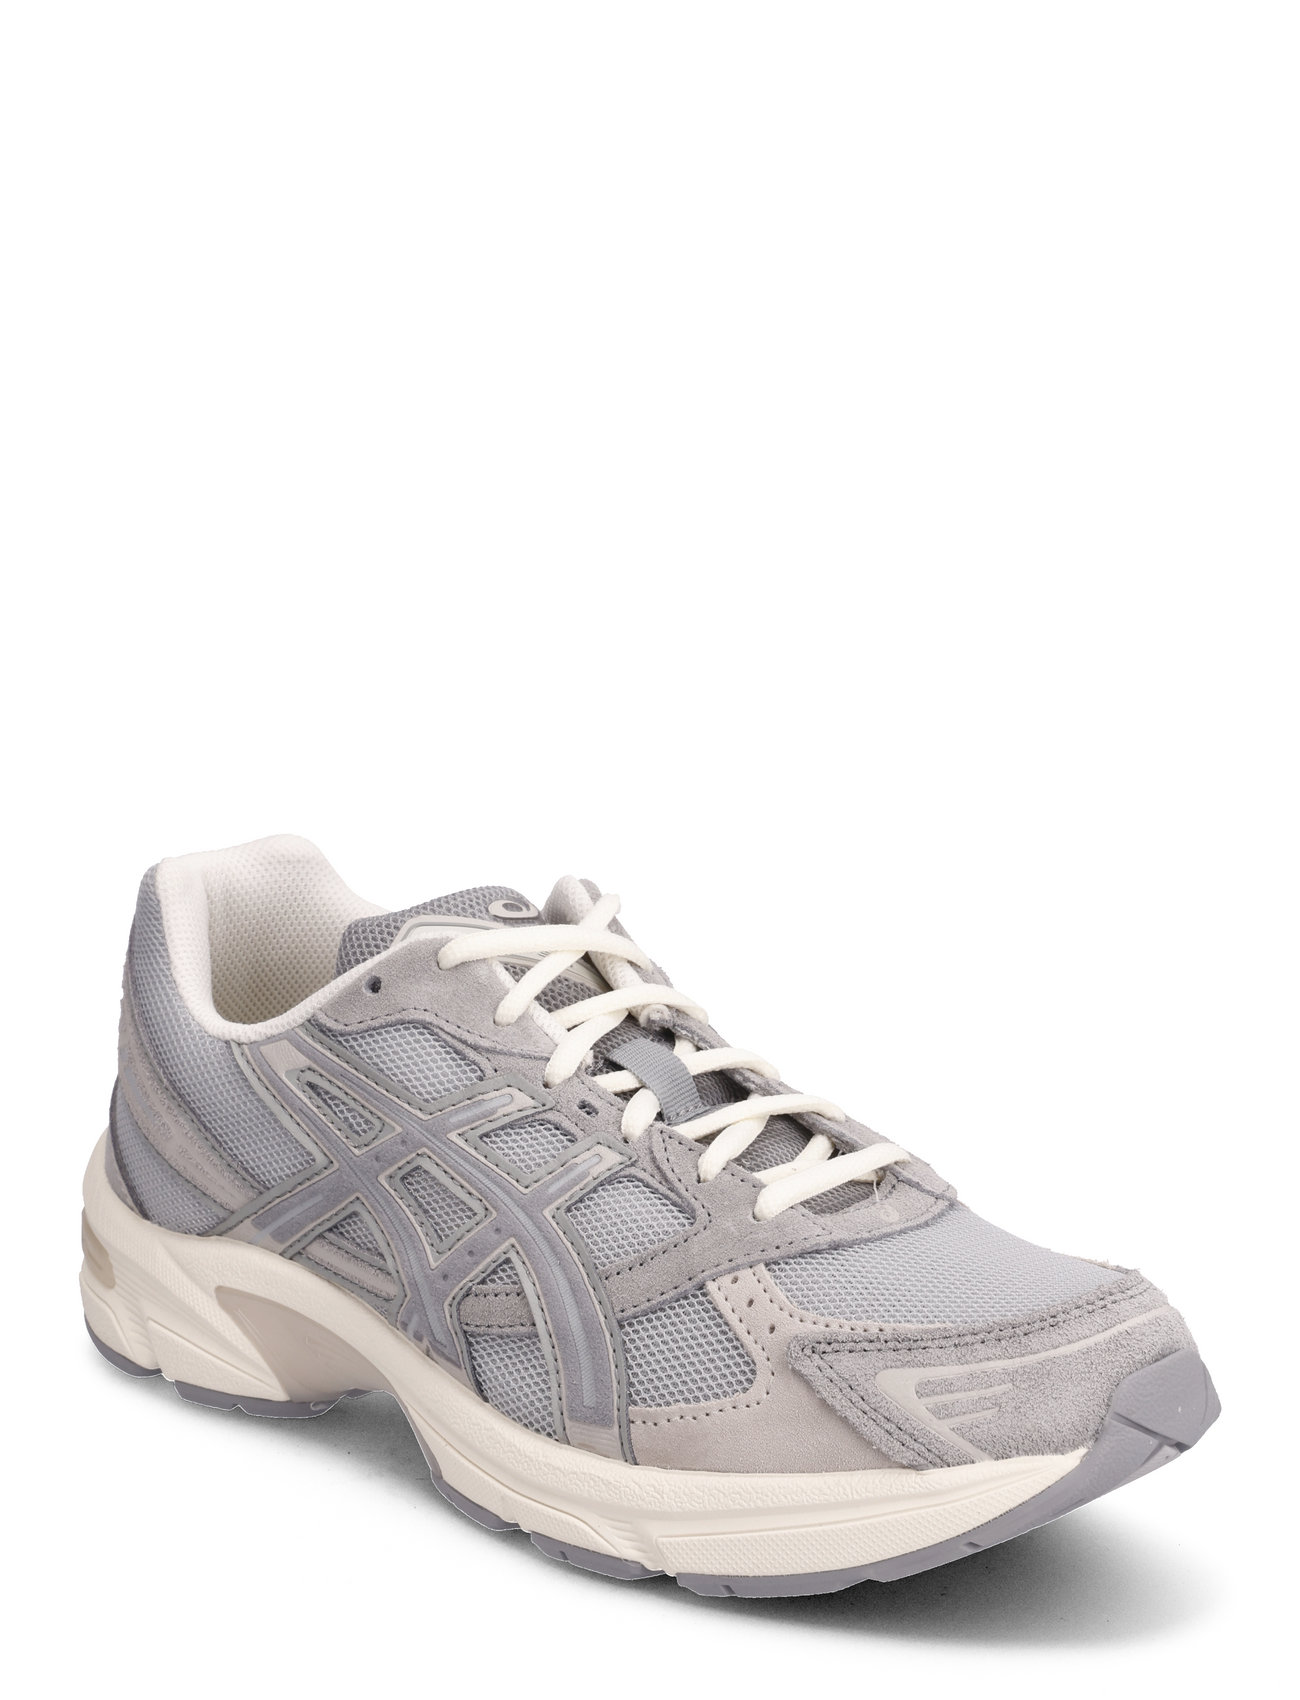 Gel-1130 Sport Sneakers Low-top Sneakers Grey Asics